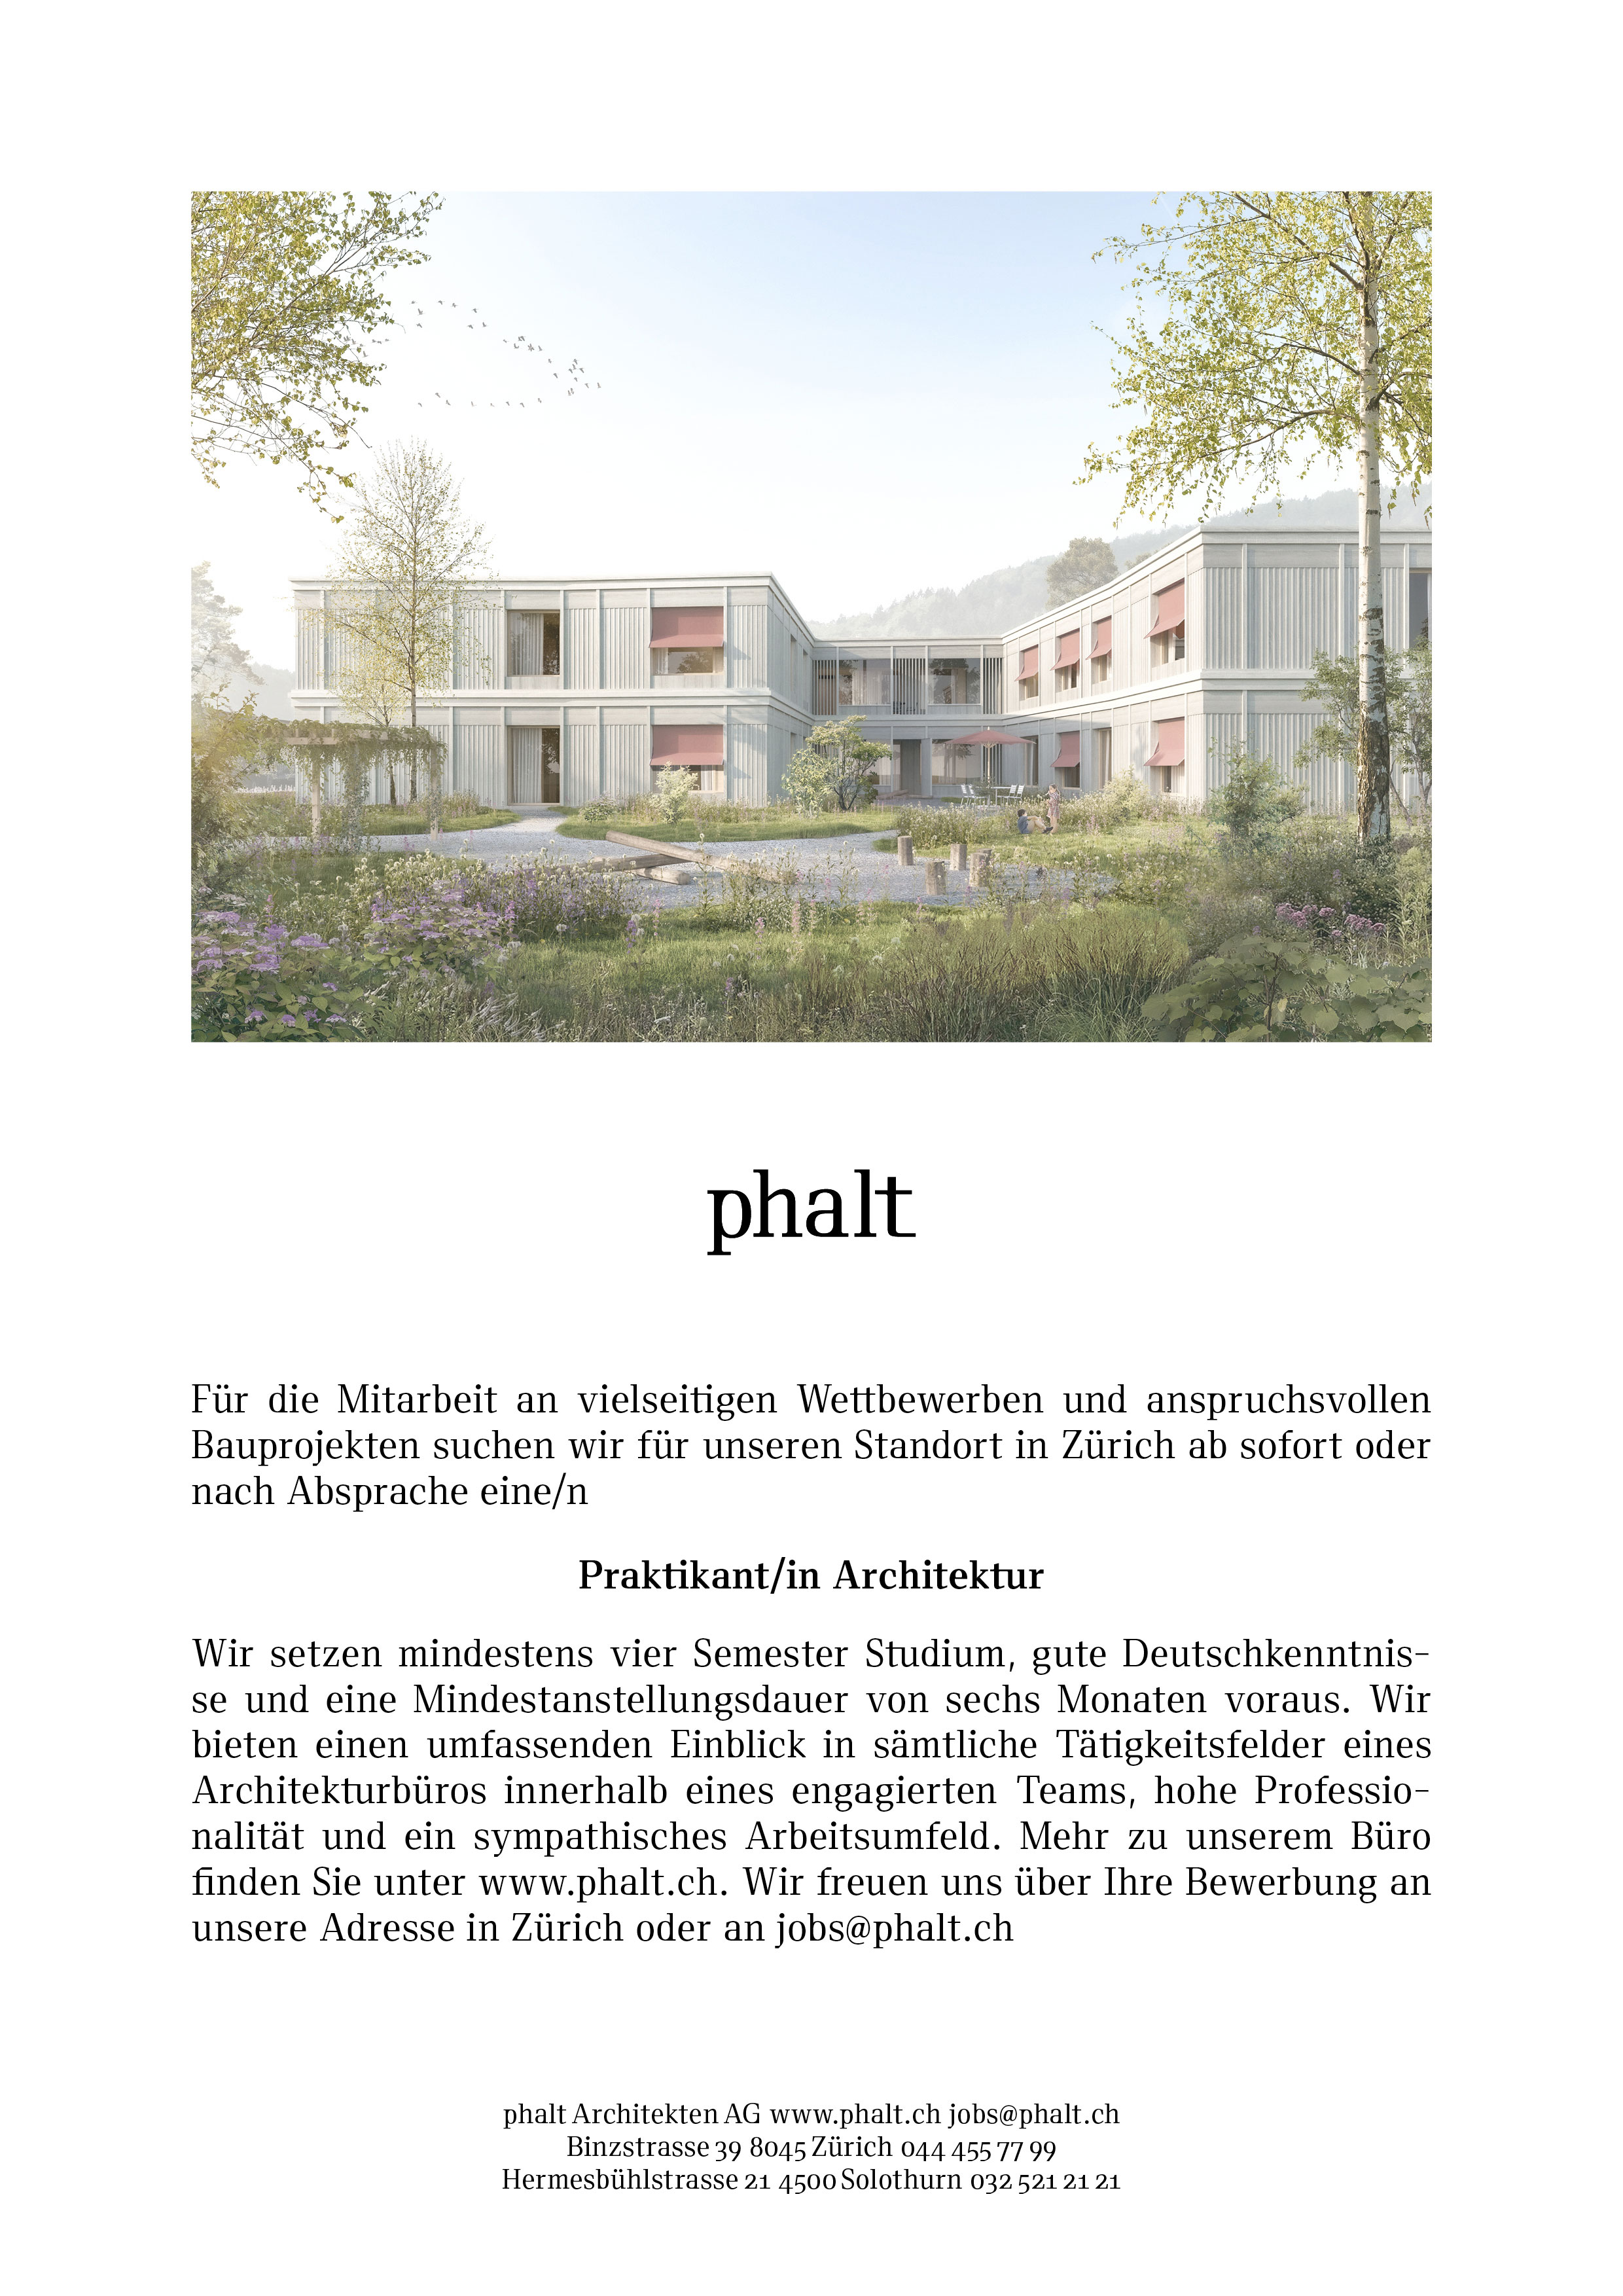 phalt Architekten AG